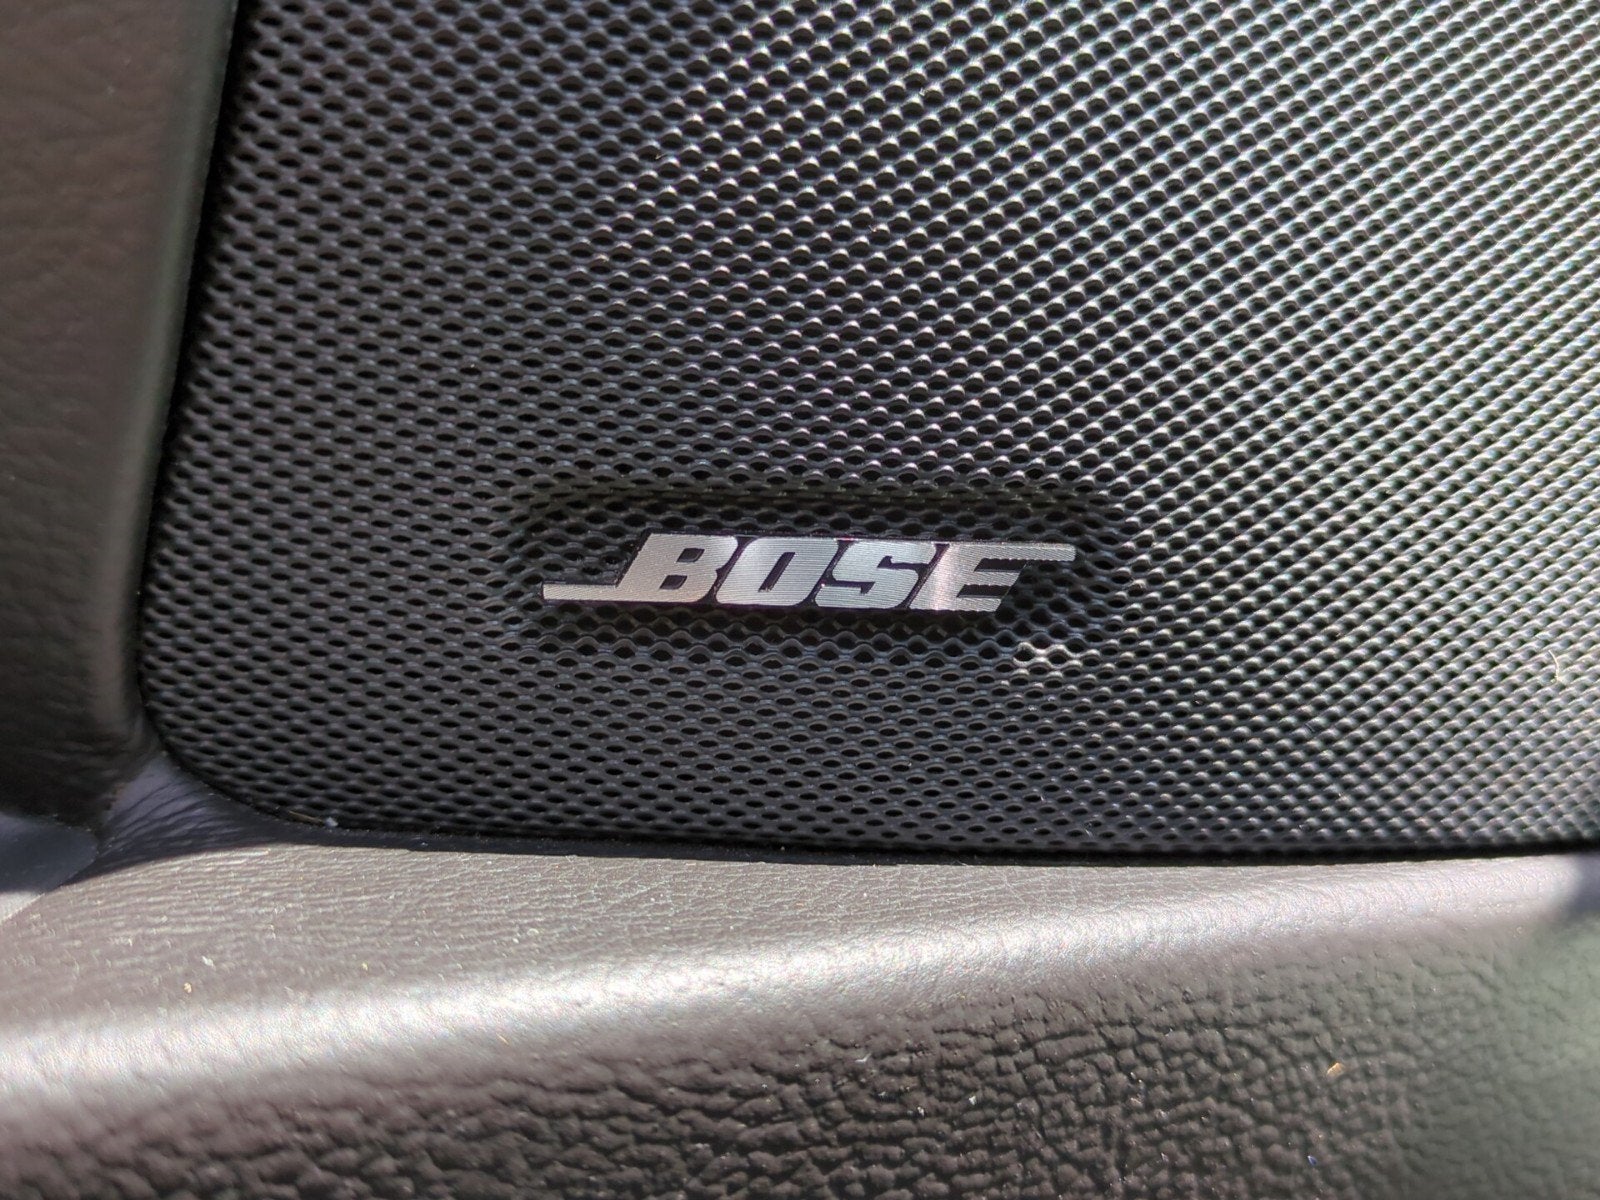 2008 Chevrolet Corvette Base